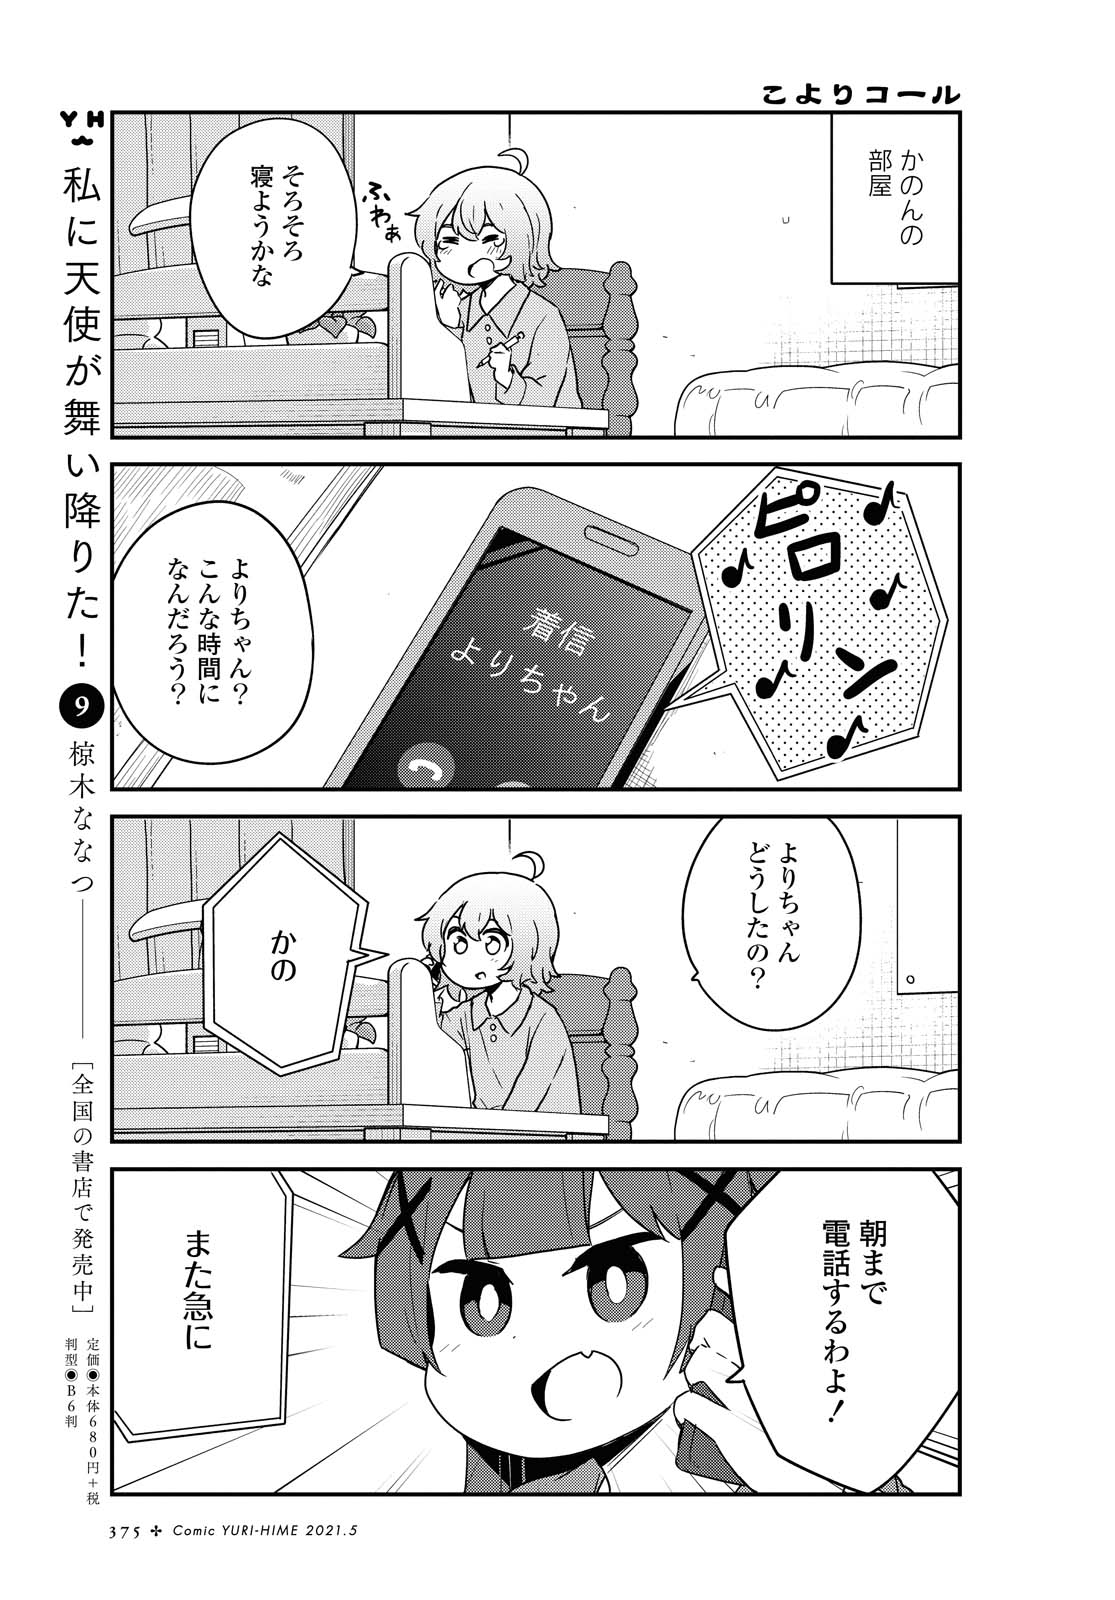 Watashi ni Tenshi ga Maiorita! - Chapter 80 - Page 1